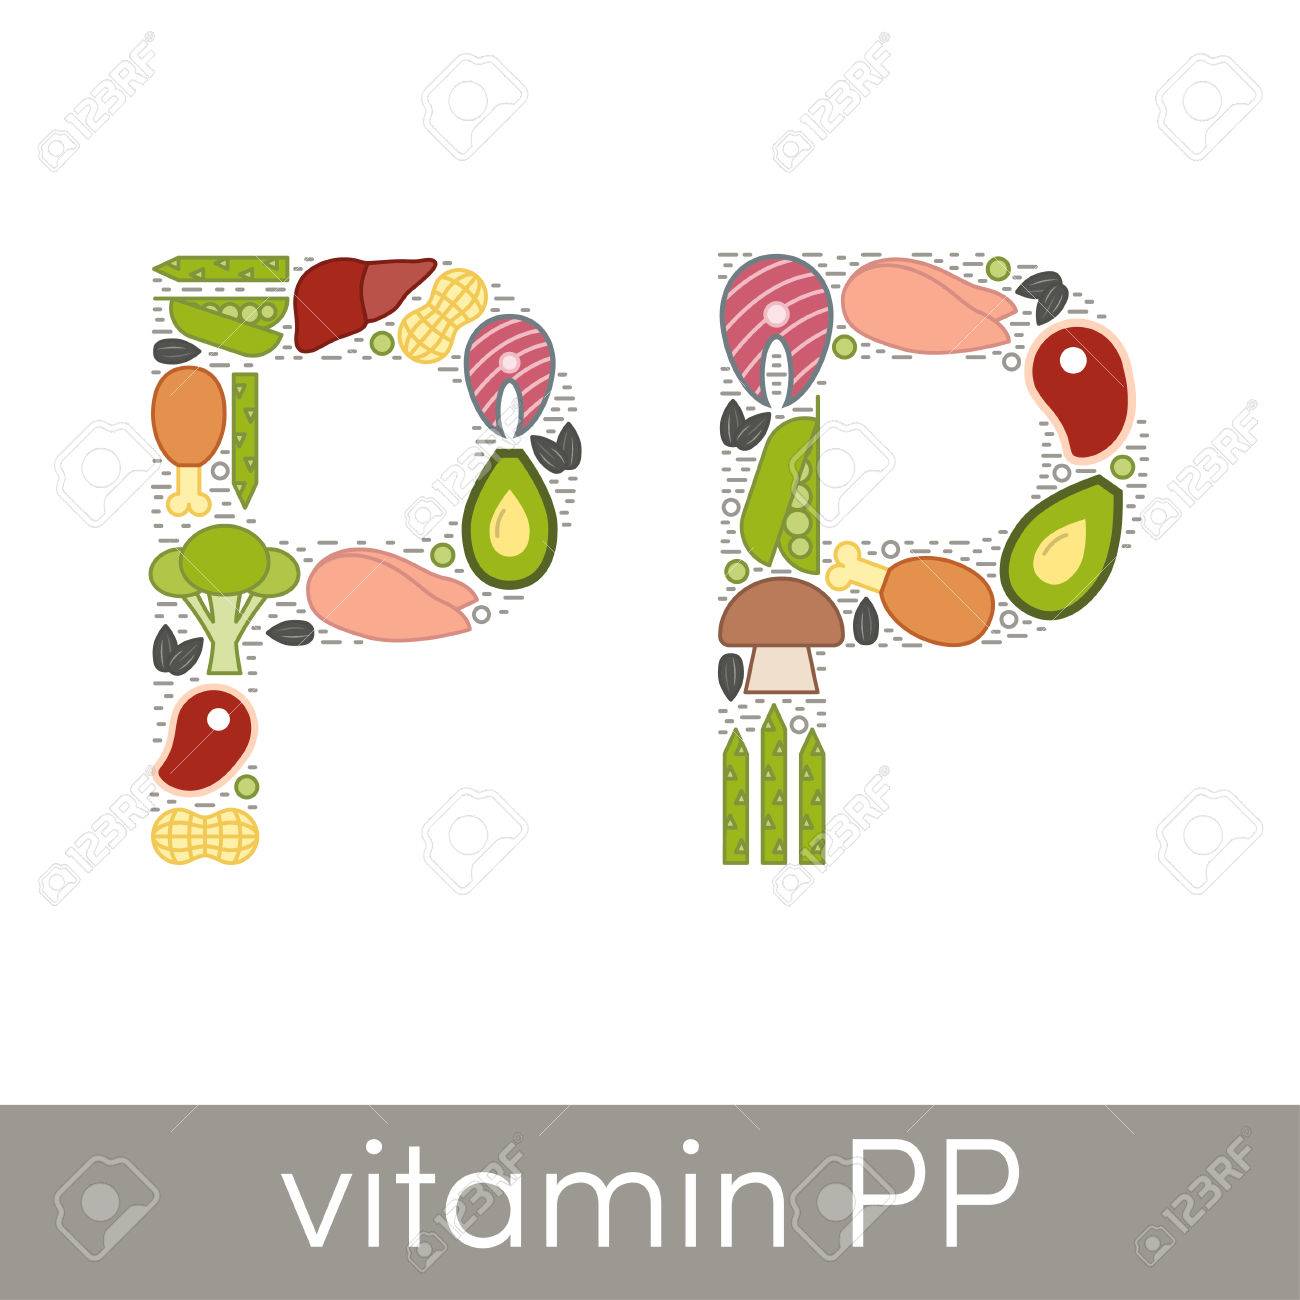 PP vitamini çatışmazlığının ƏLAMƏTLƏRİ və MÜALİCƏSİ